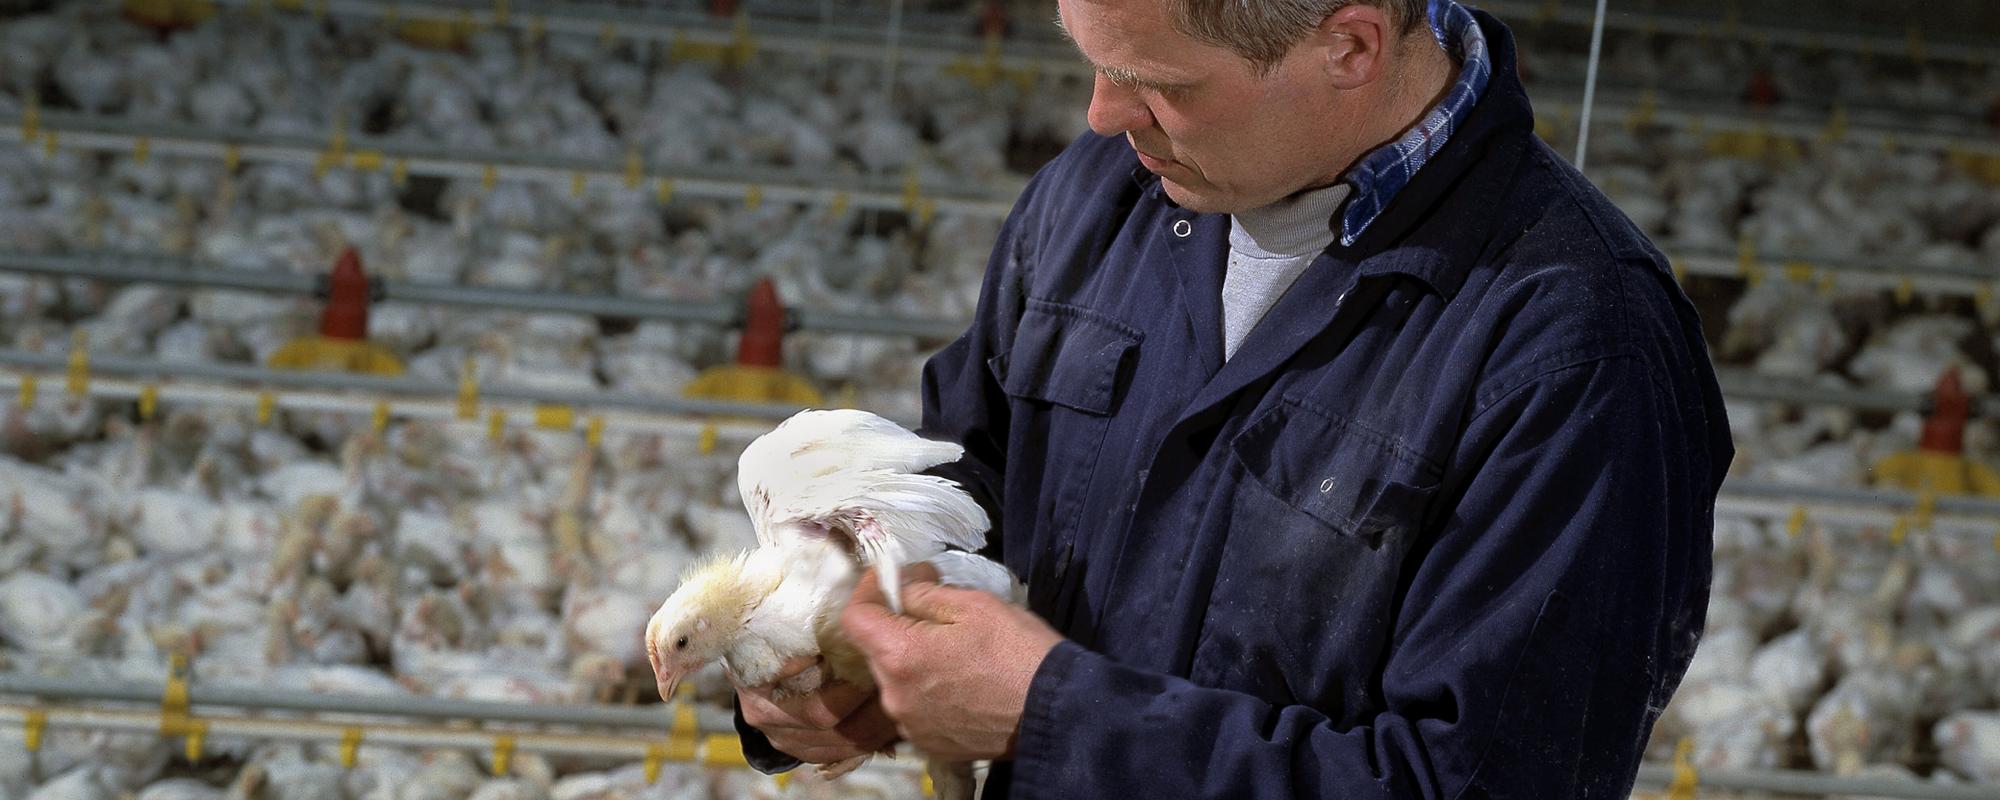 Poultry farmer